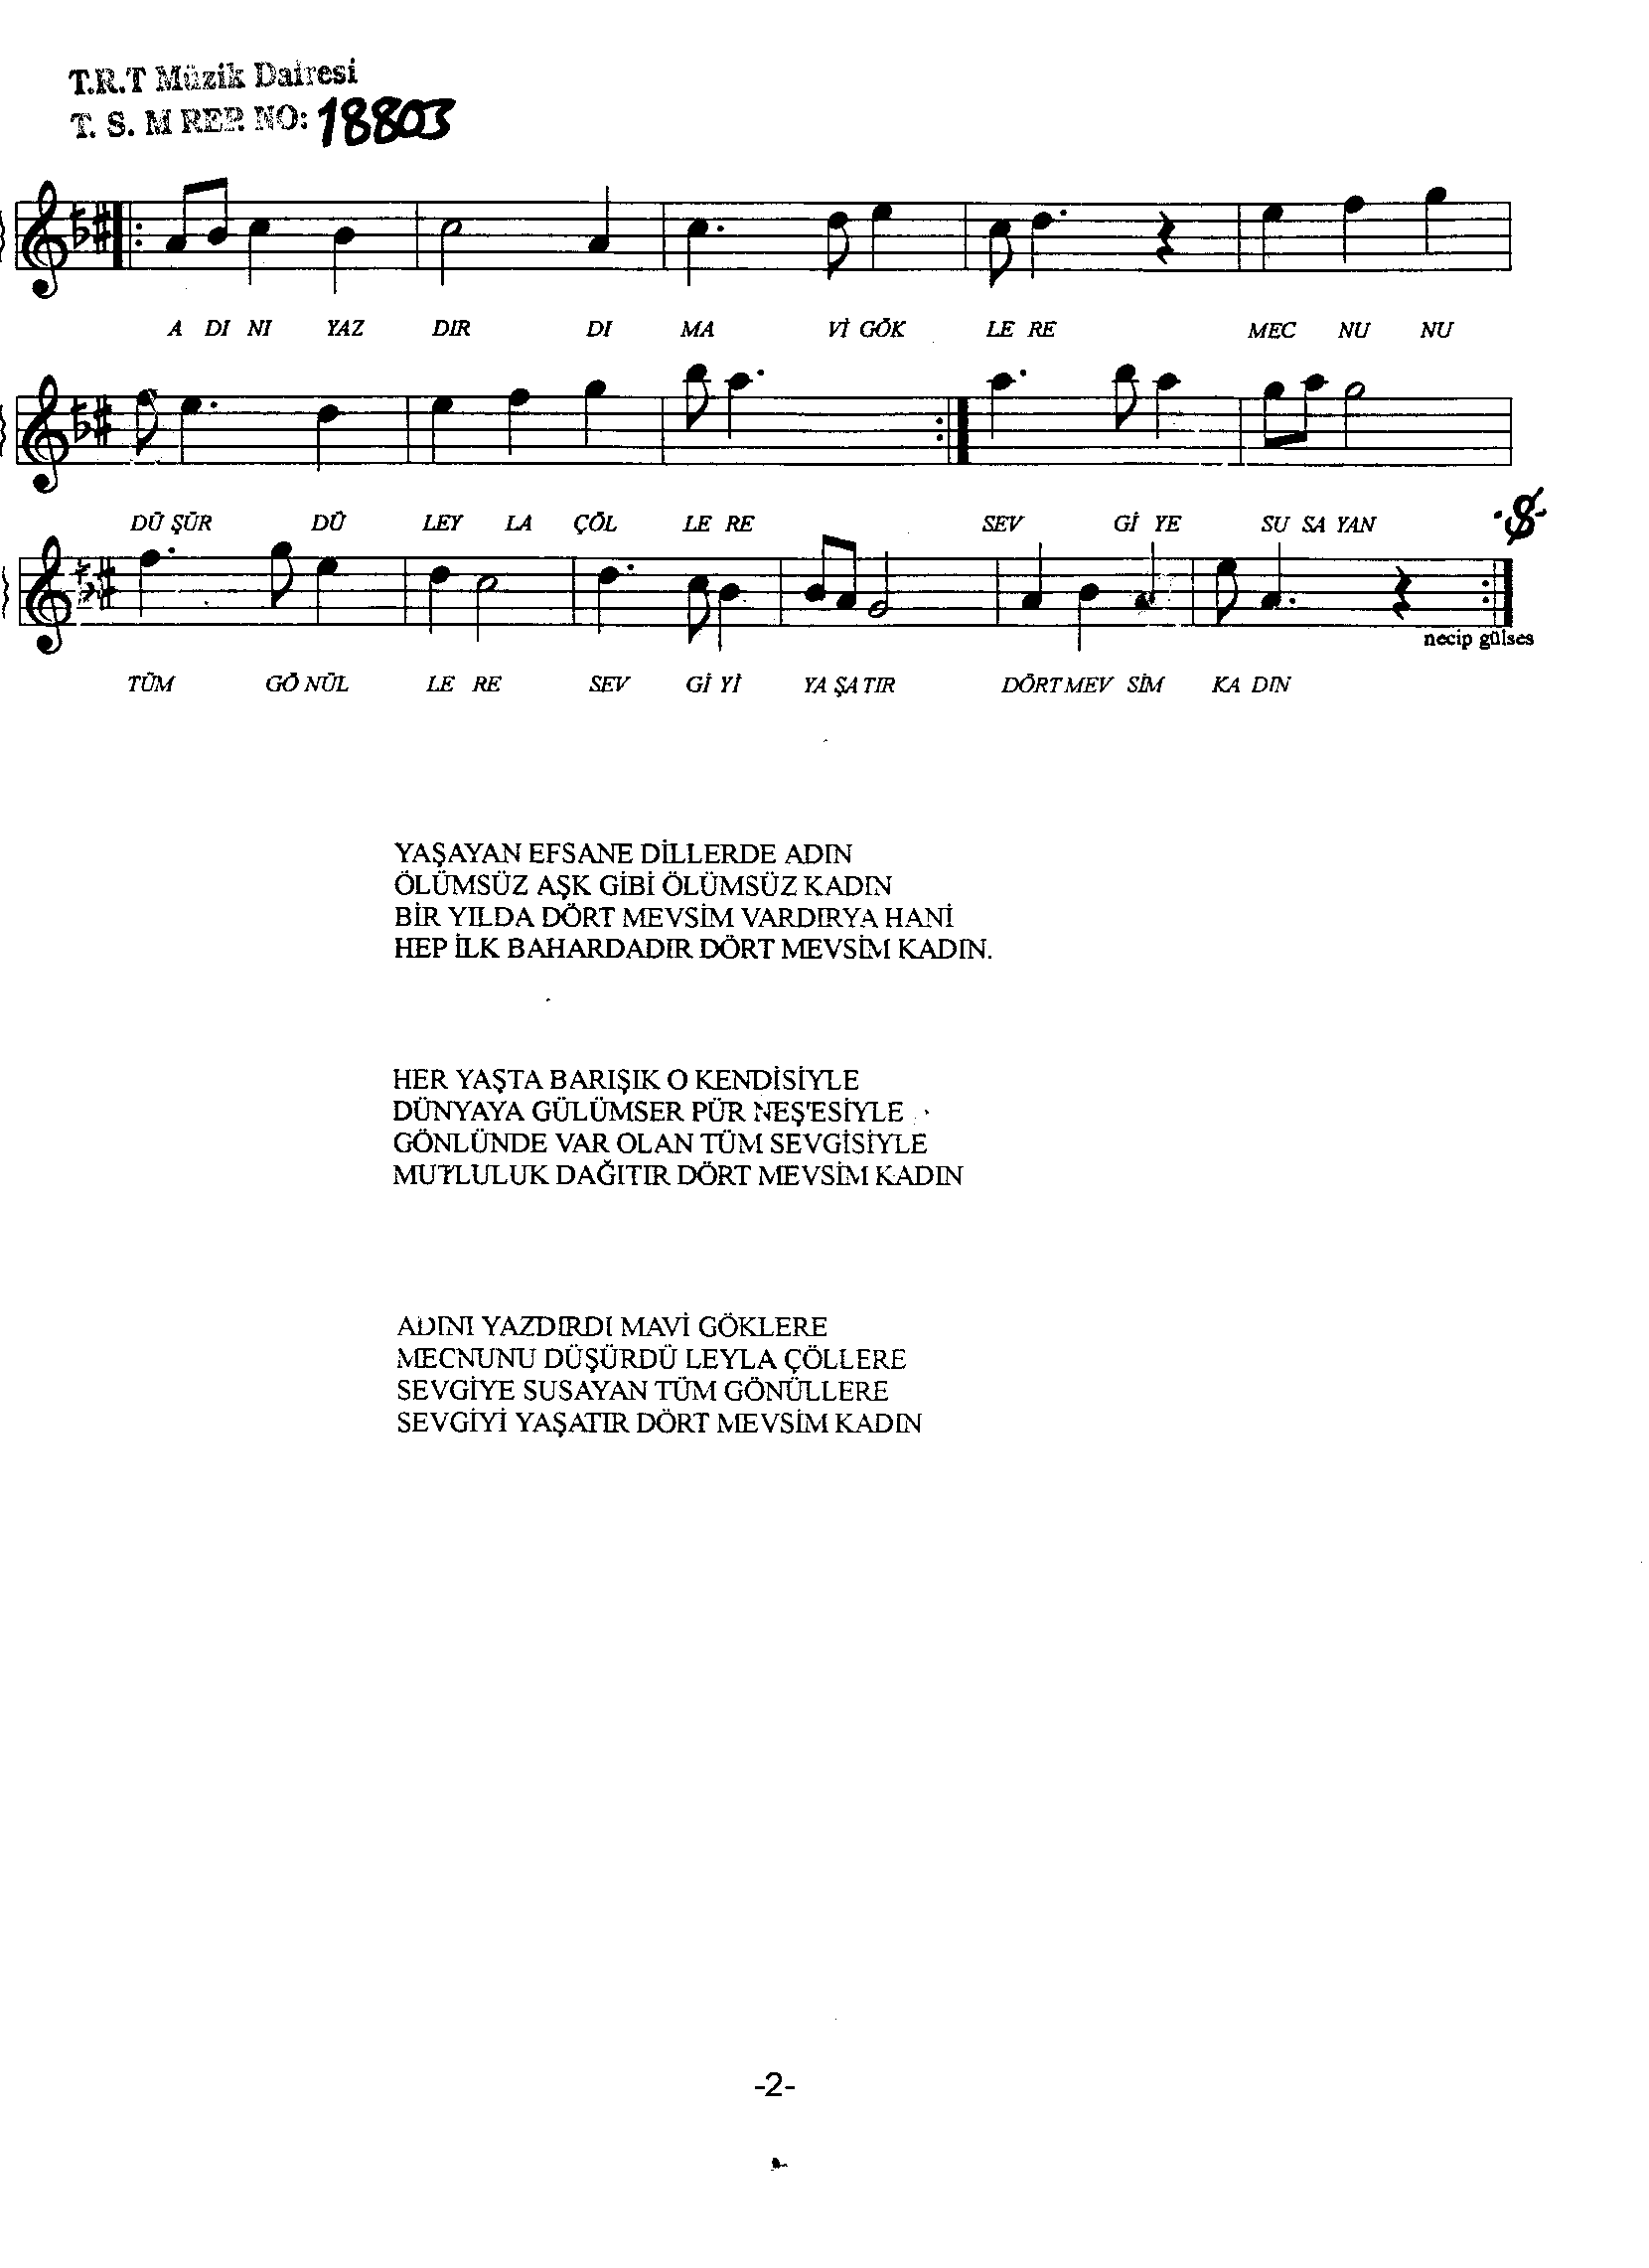 Hicâz - Şarkı - Necip Gülses - Sayfa 2